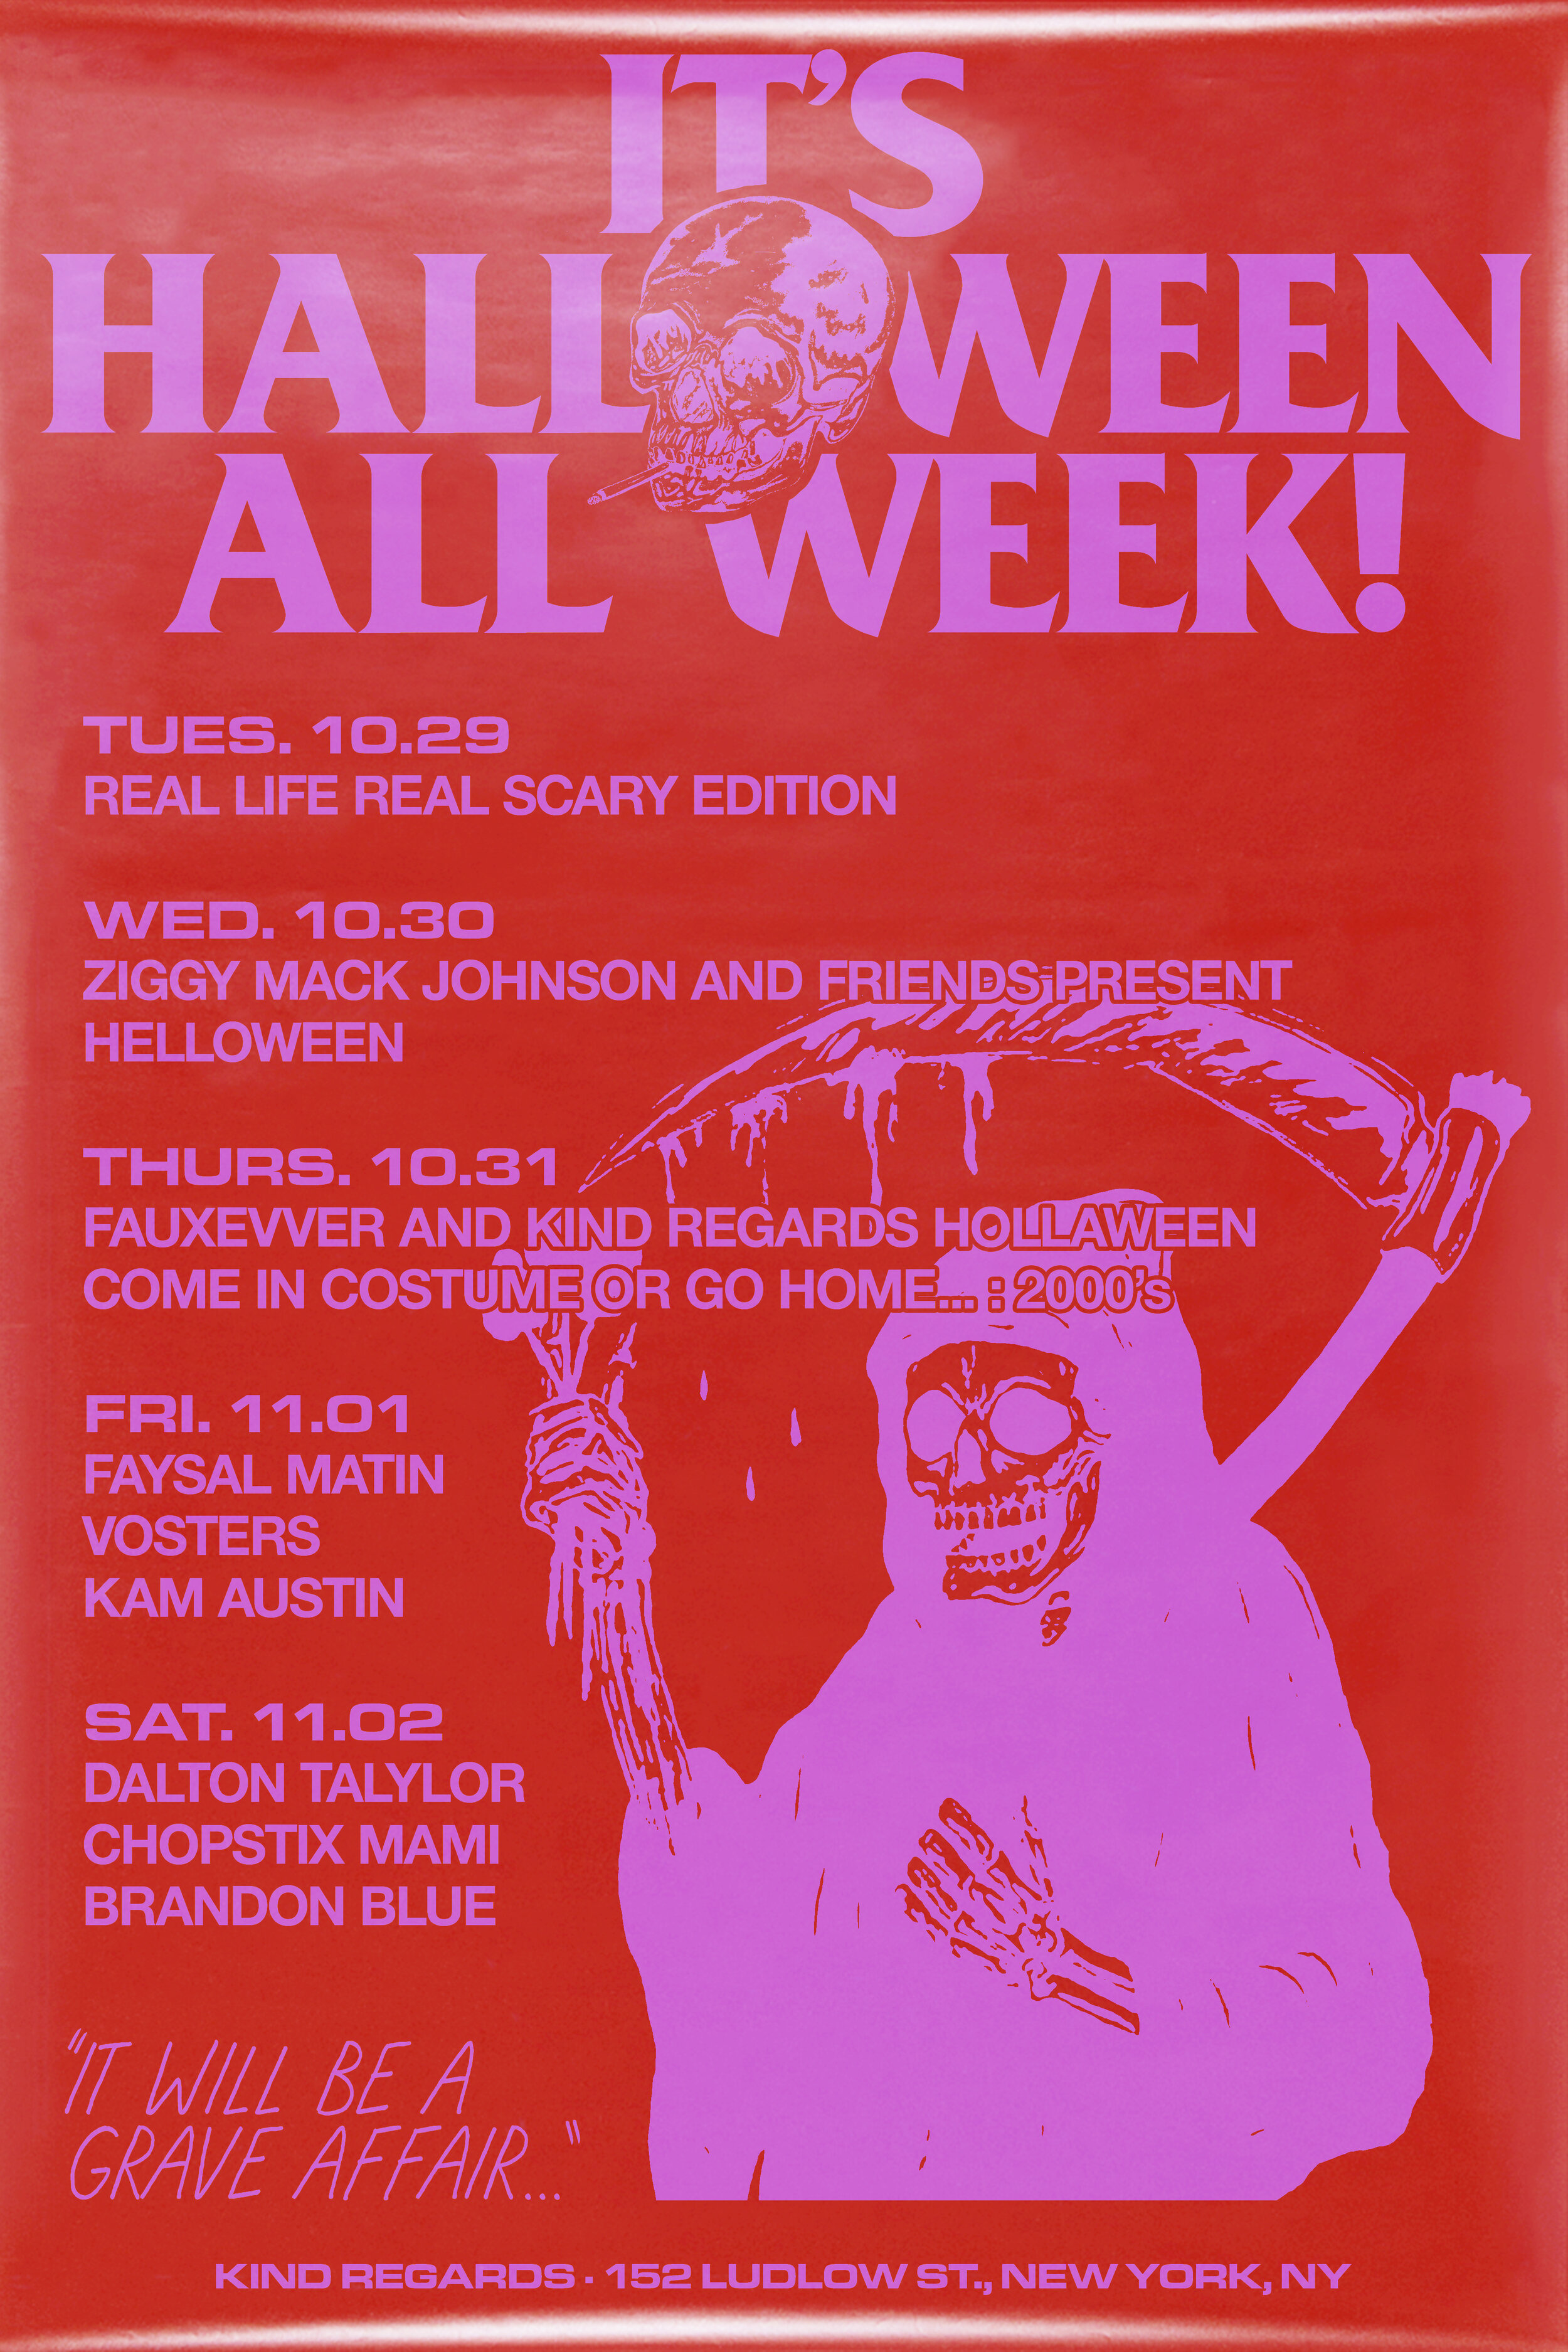 kind regards halloween week poster revised.jpg